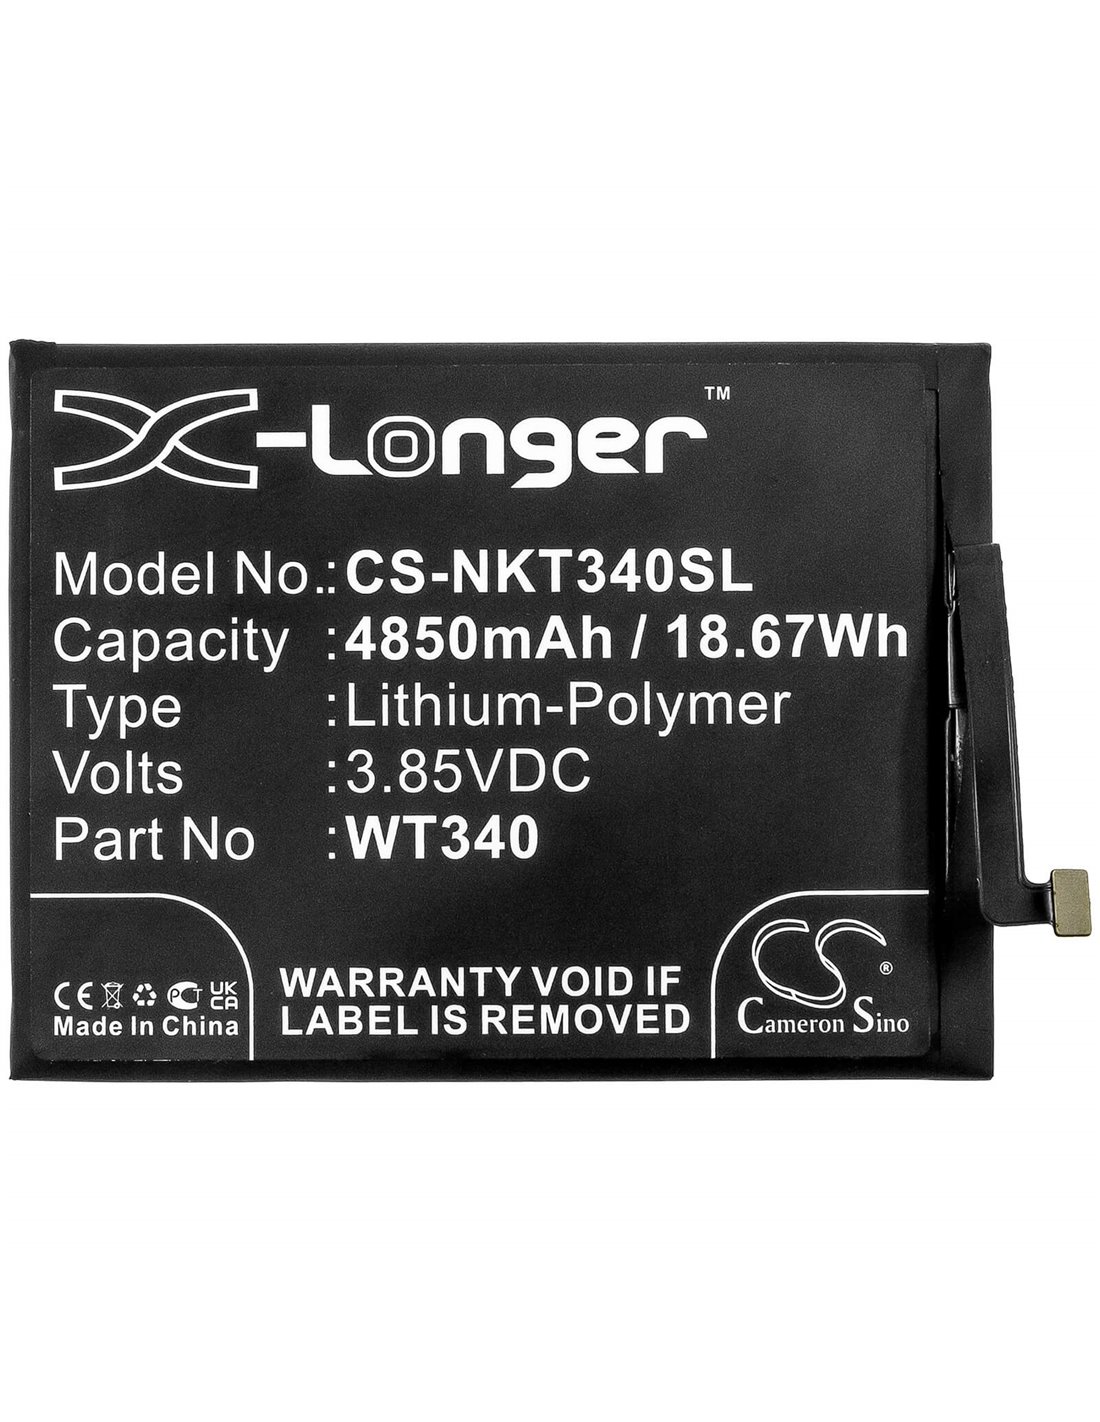 3.85V, 4850mAh, Li-Polymer Battery fits Nokia, Cn110, G10, G20, 18.67Wh